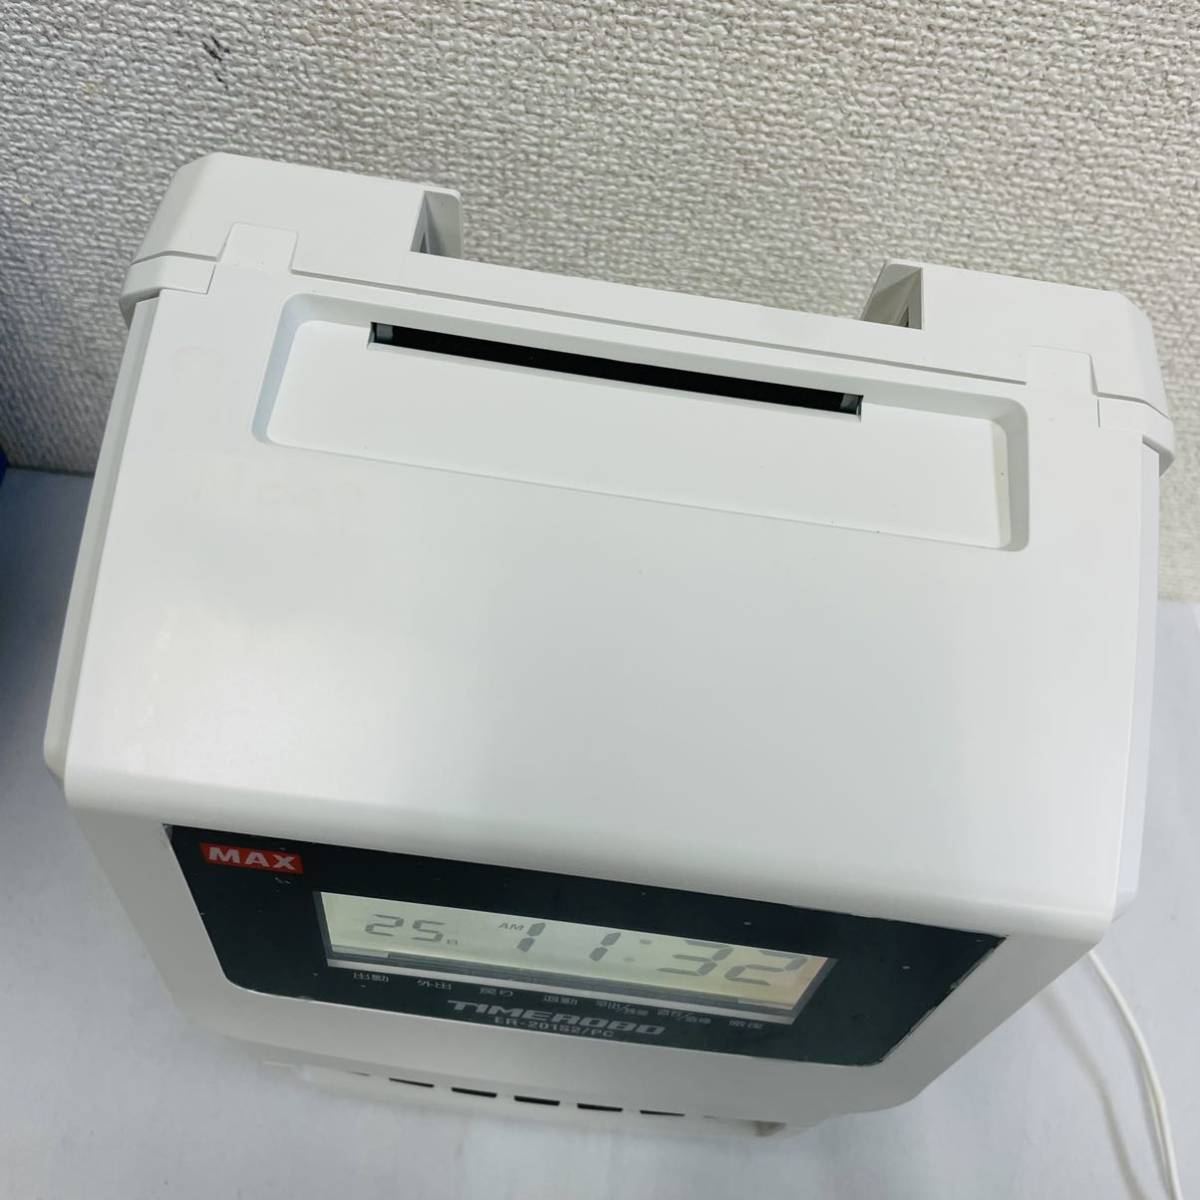 MAXタイムレコーダー 電波時計付ER-201S2/PC 【お1人様1点限り】 4800